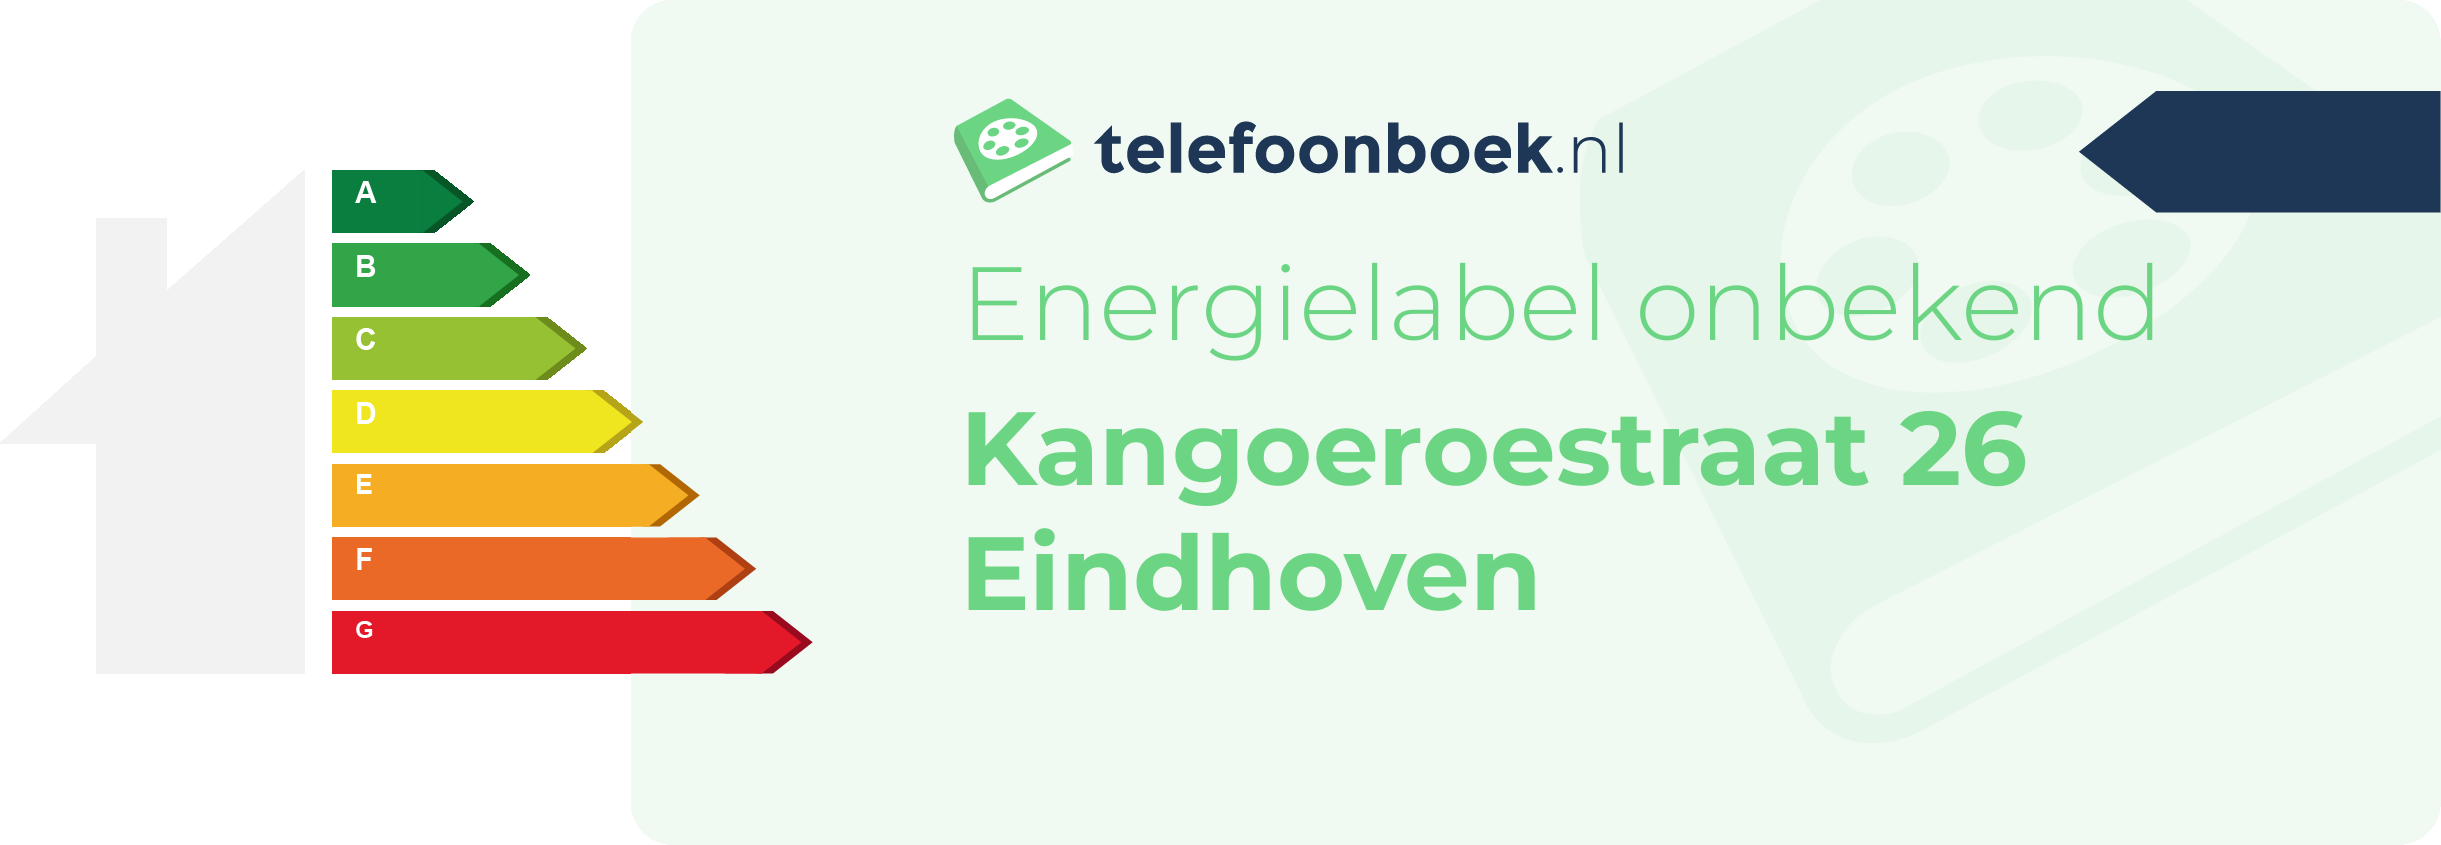 Energielabel Kangoeroestraat 26 Eindhoven